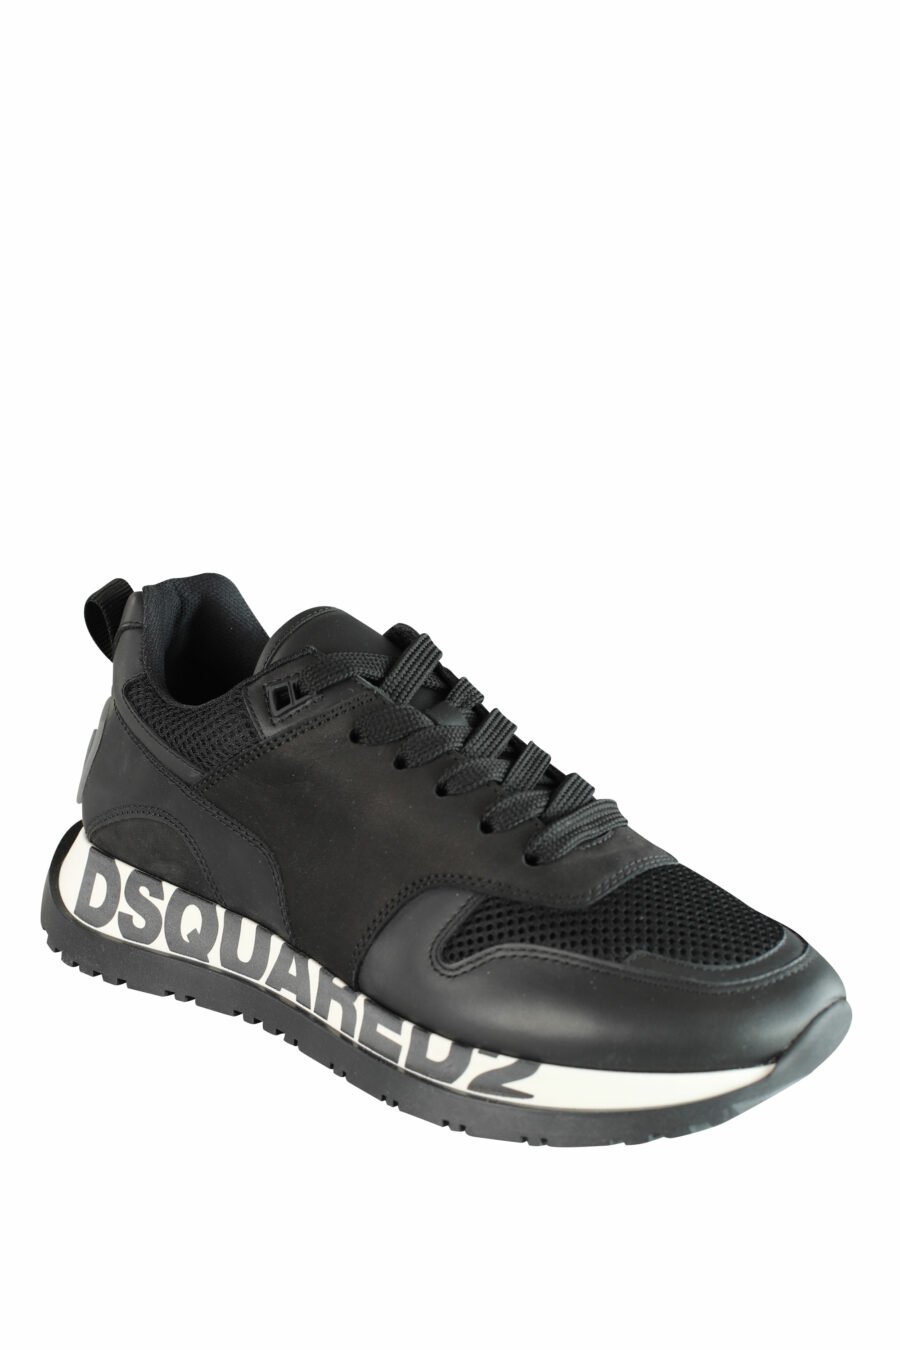 Chaussures de course noires avec semelle blanche et logo noir - IMG 1431